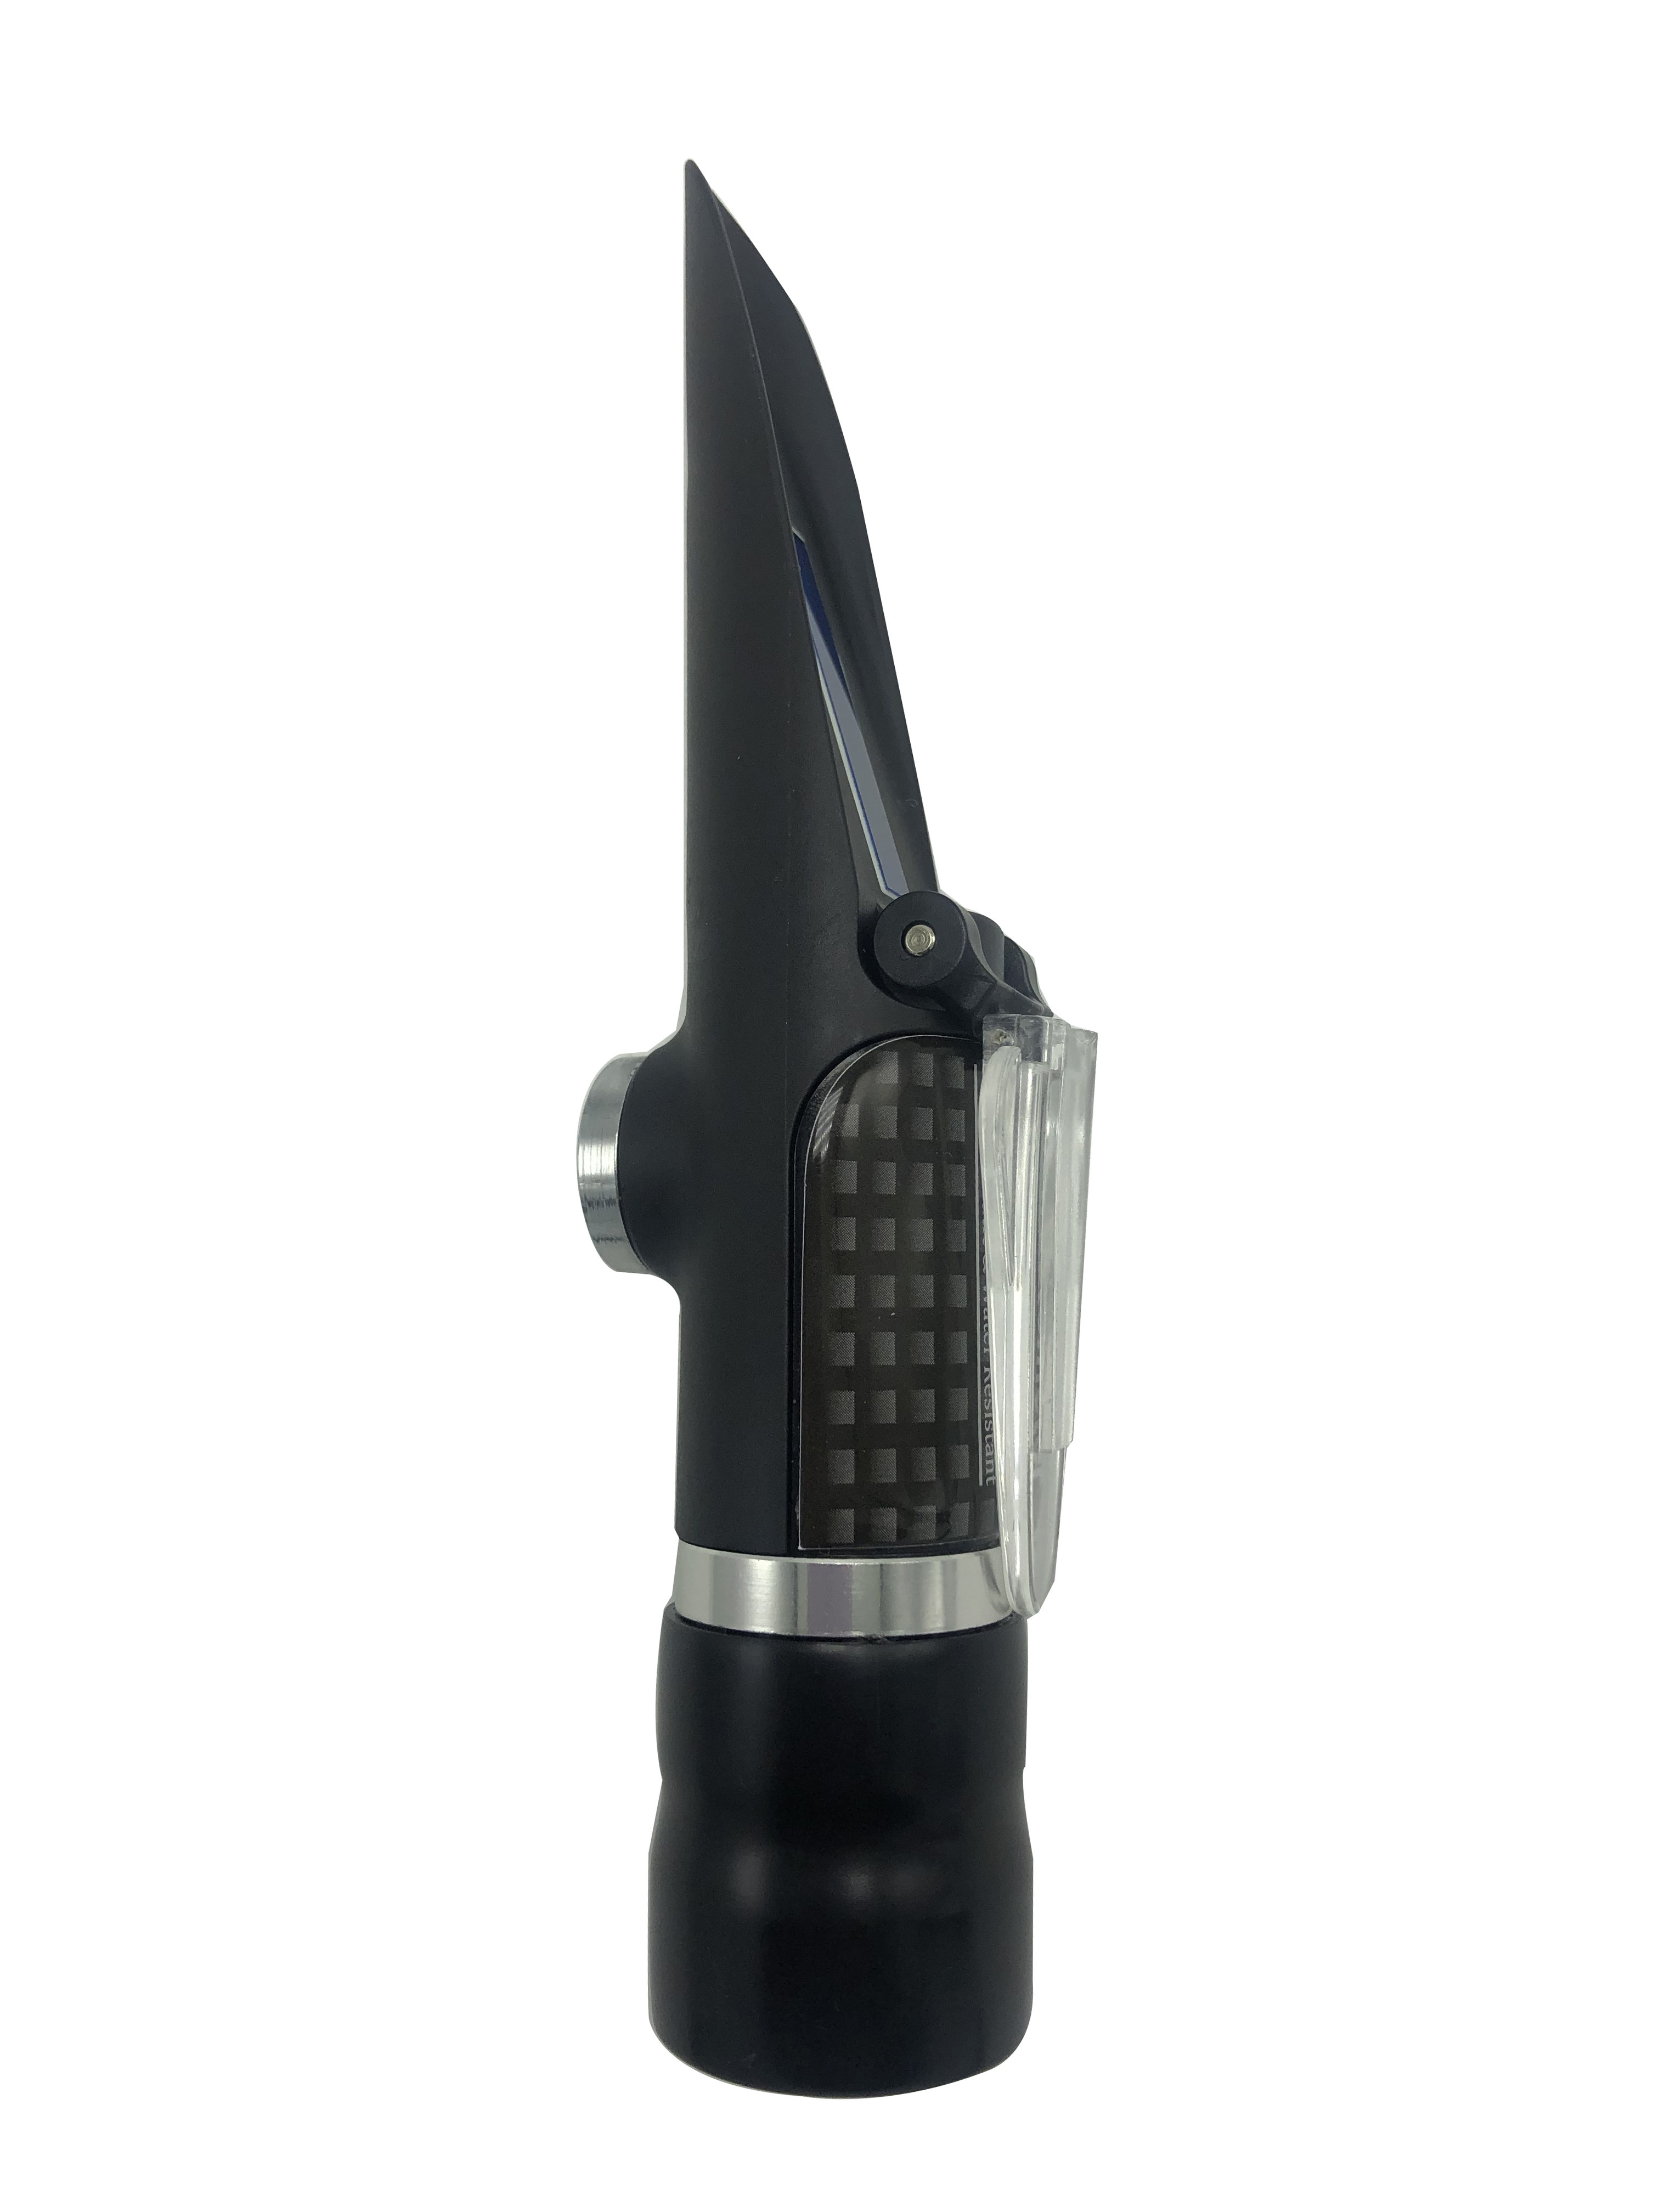 Brix Refractometer Range 28-62% of waterproof handheld refractometer